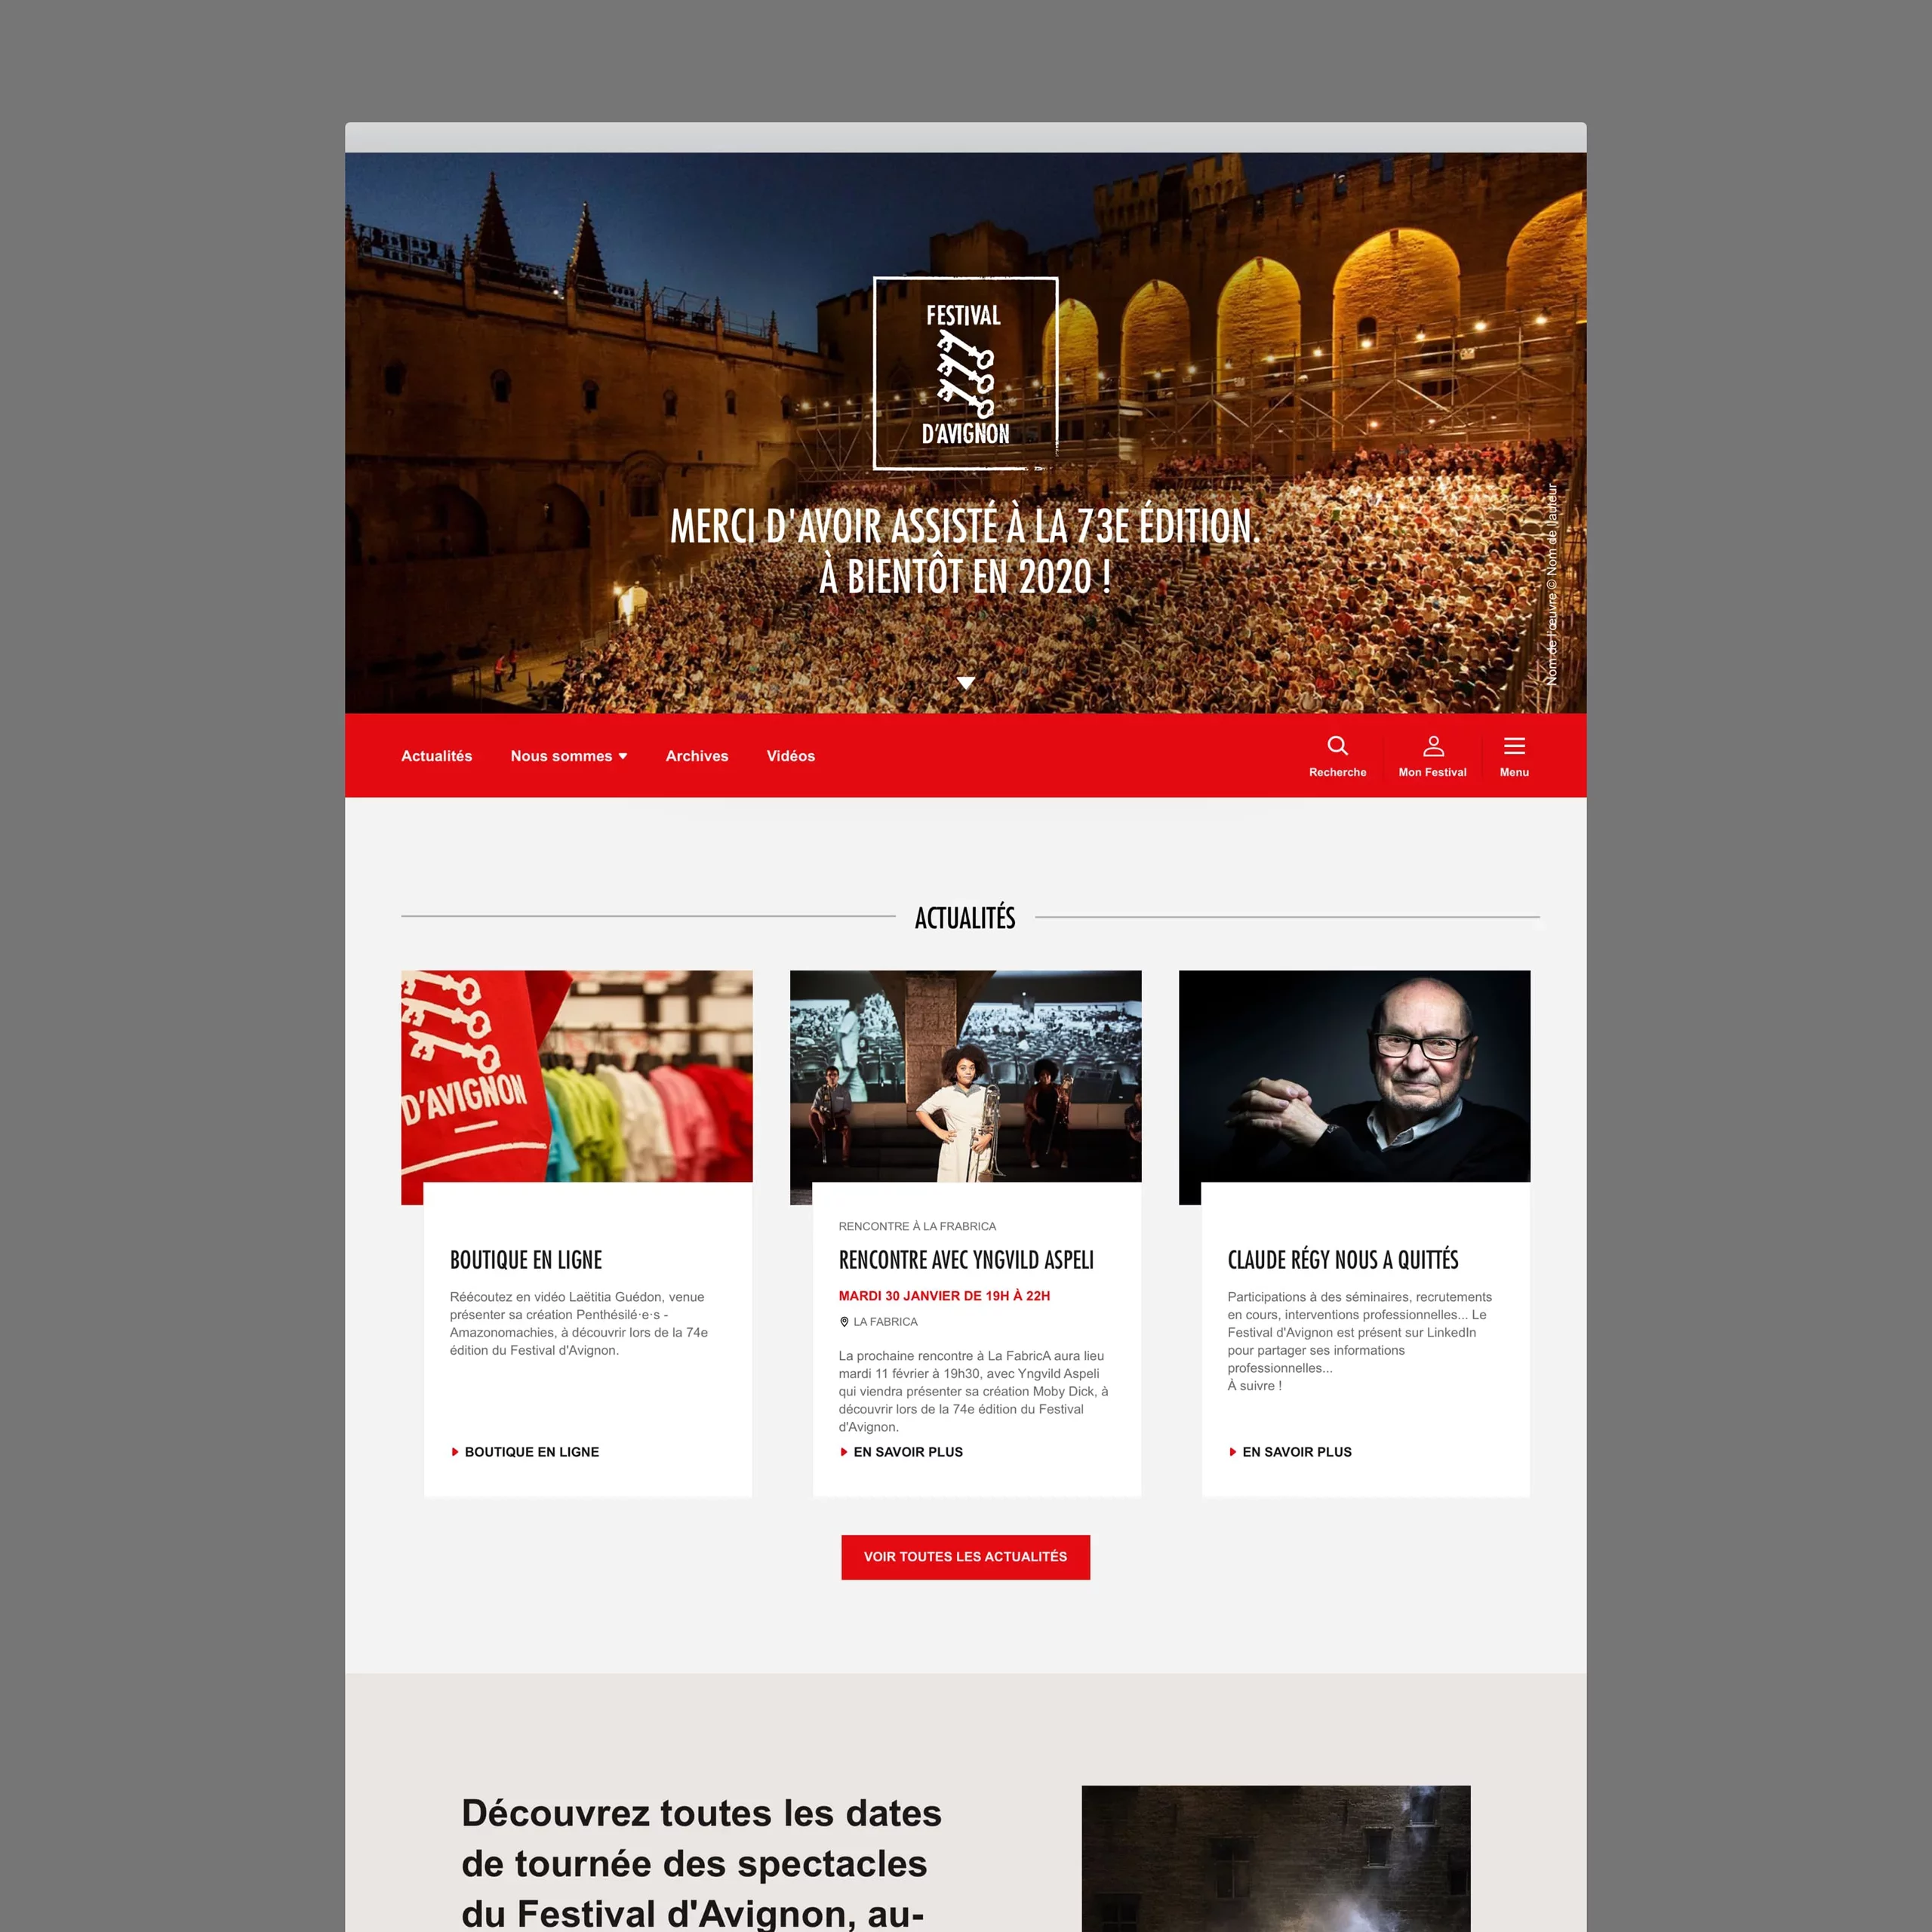 Page d'accueil desktop du Festival d'Avignon, en mode post-festival. Il n'y a plus d'affiche de saison et la couleur devient rouge